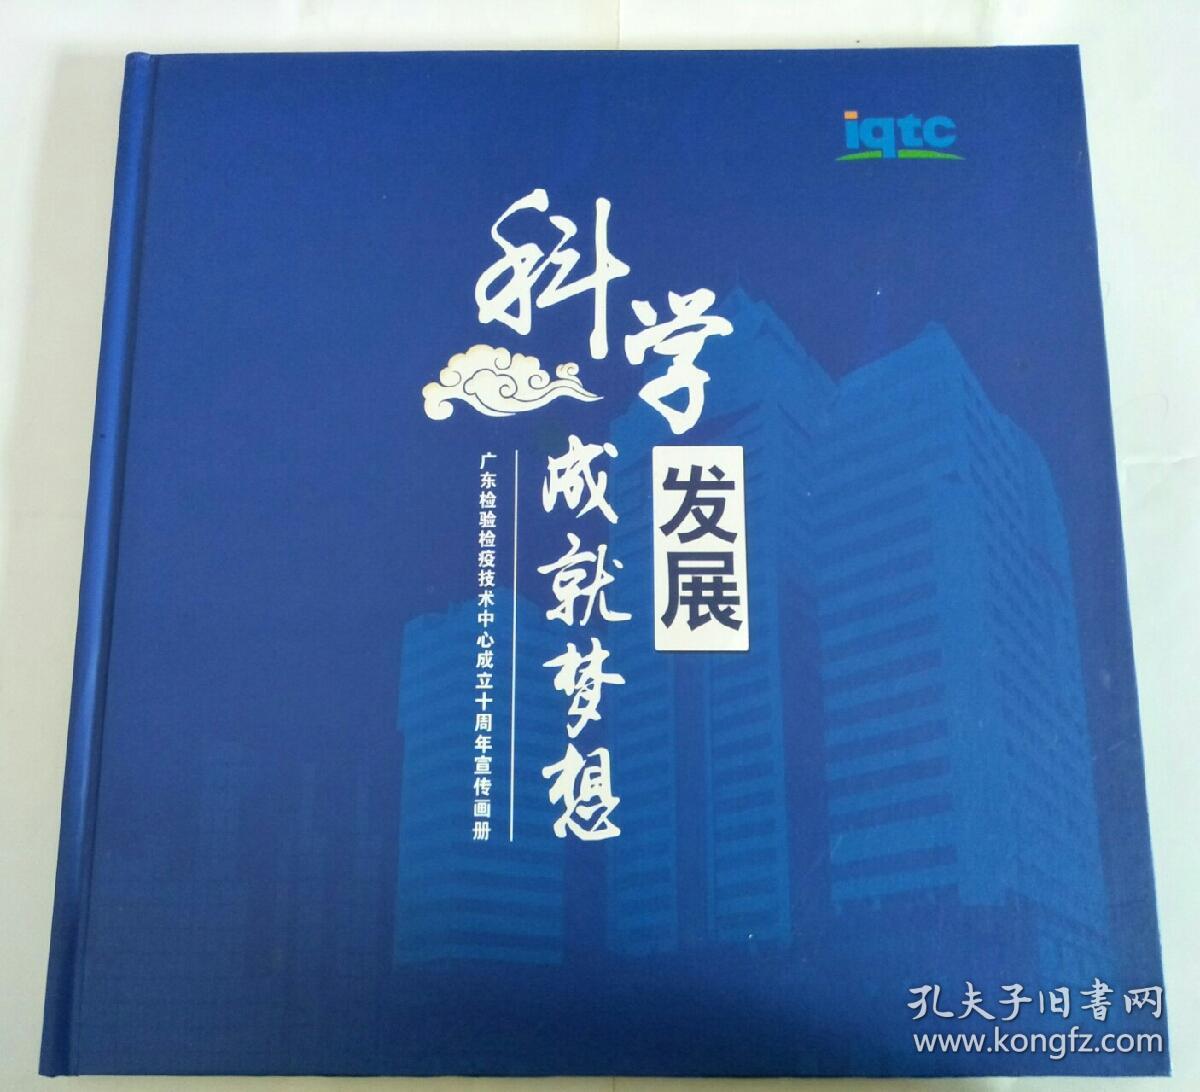 科学发展成就梦想 --广东检验检疫技术中心成立十周年宣传画册【内有多张邮票详情看图】